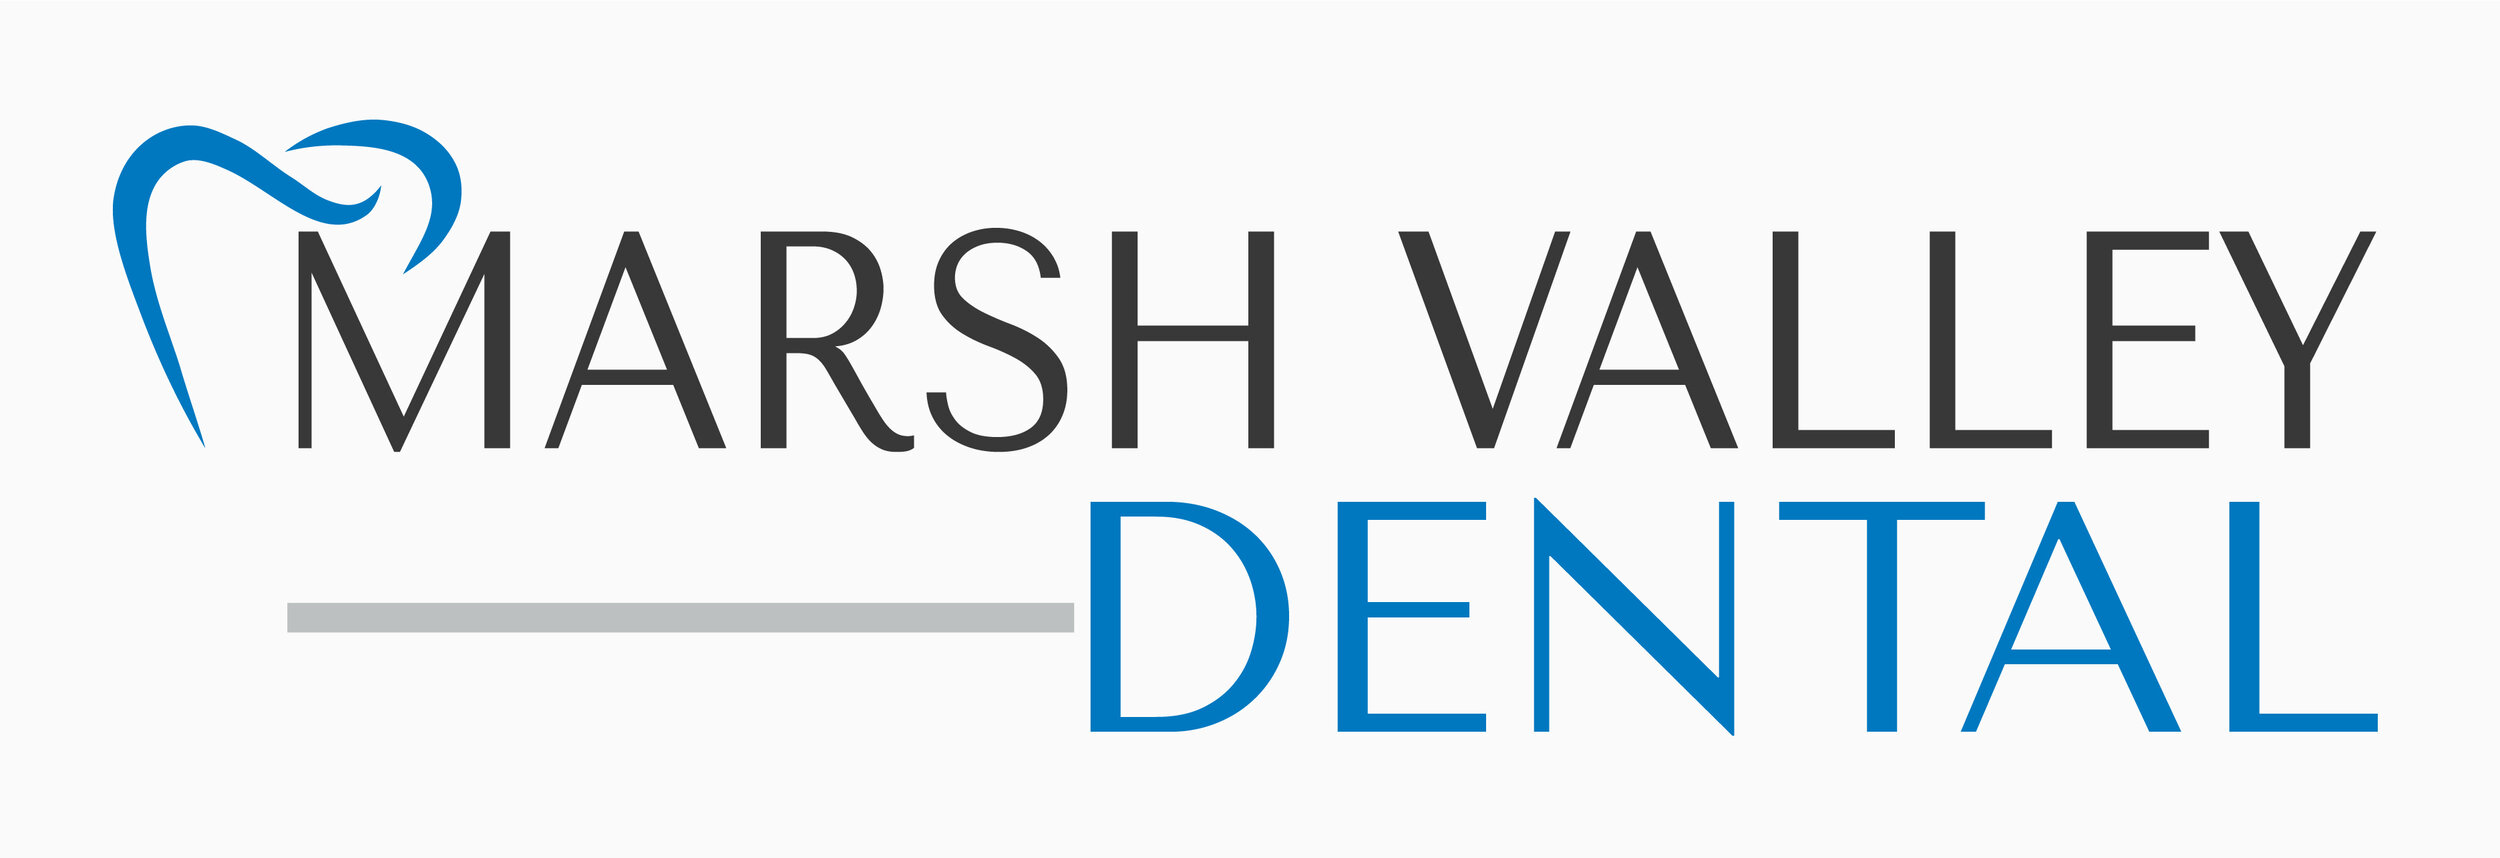 Marsh Valley Dental